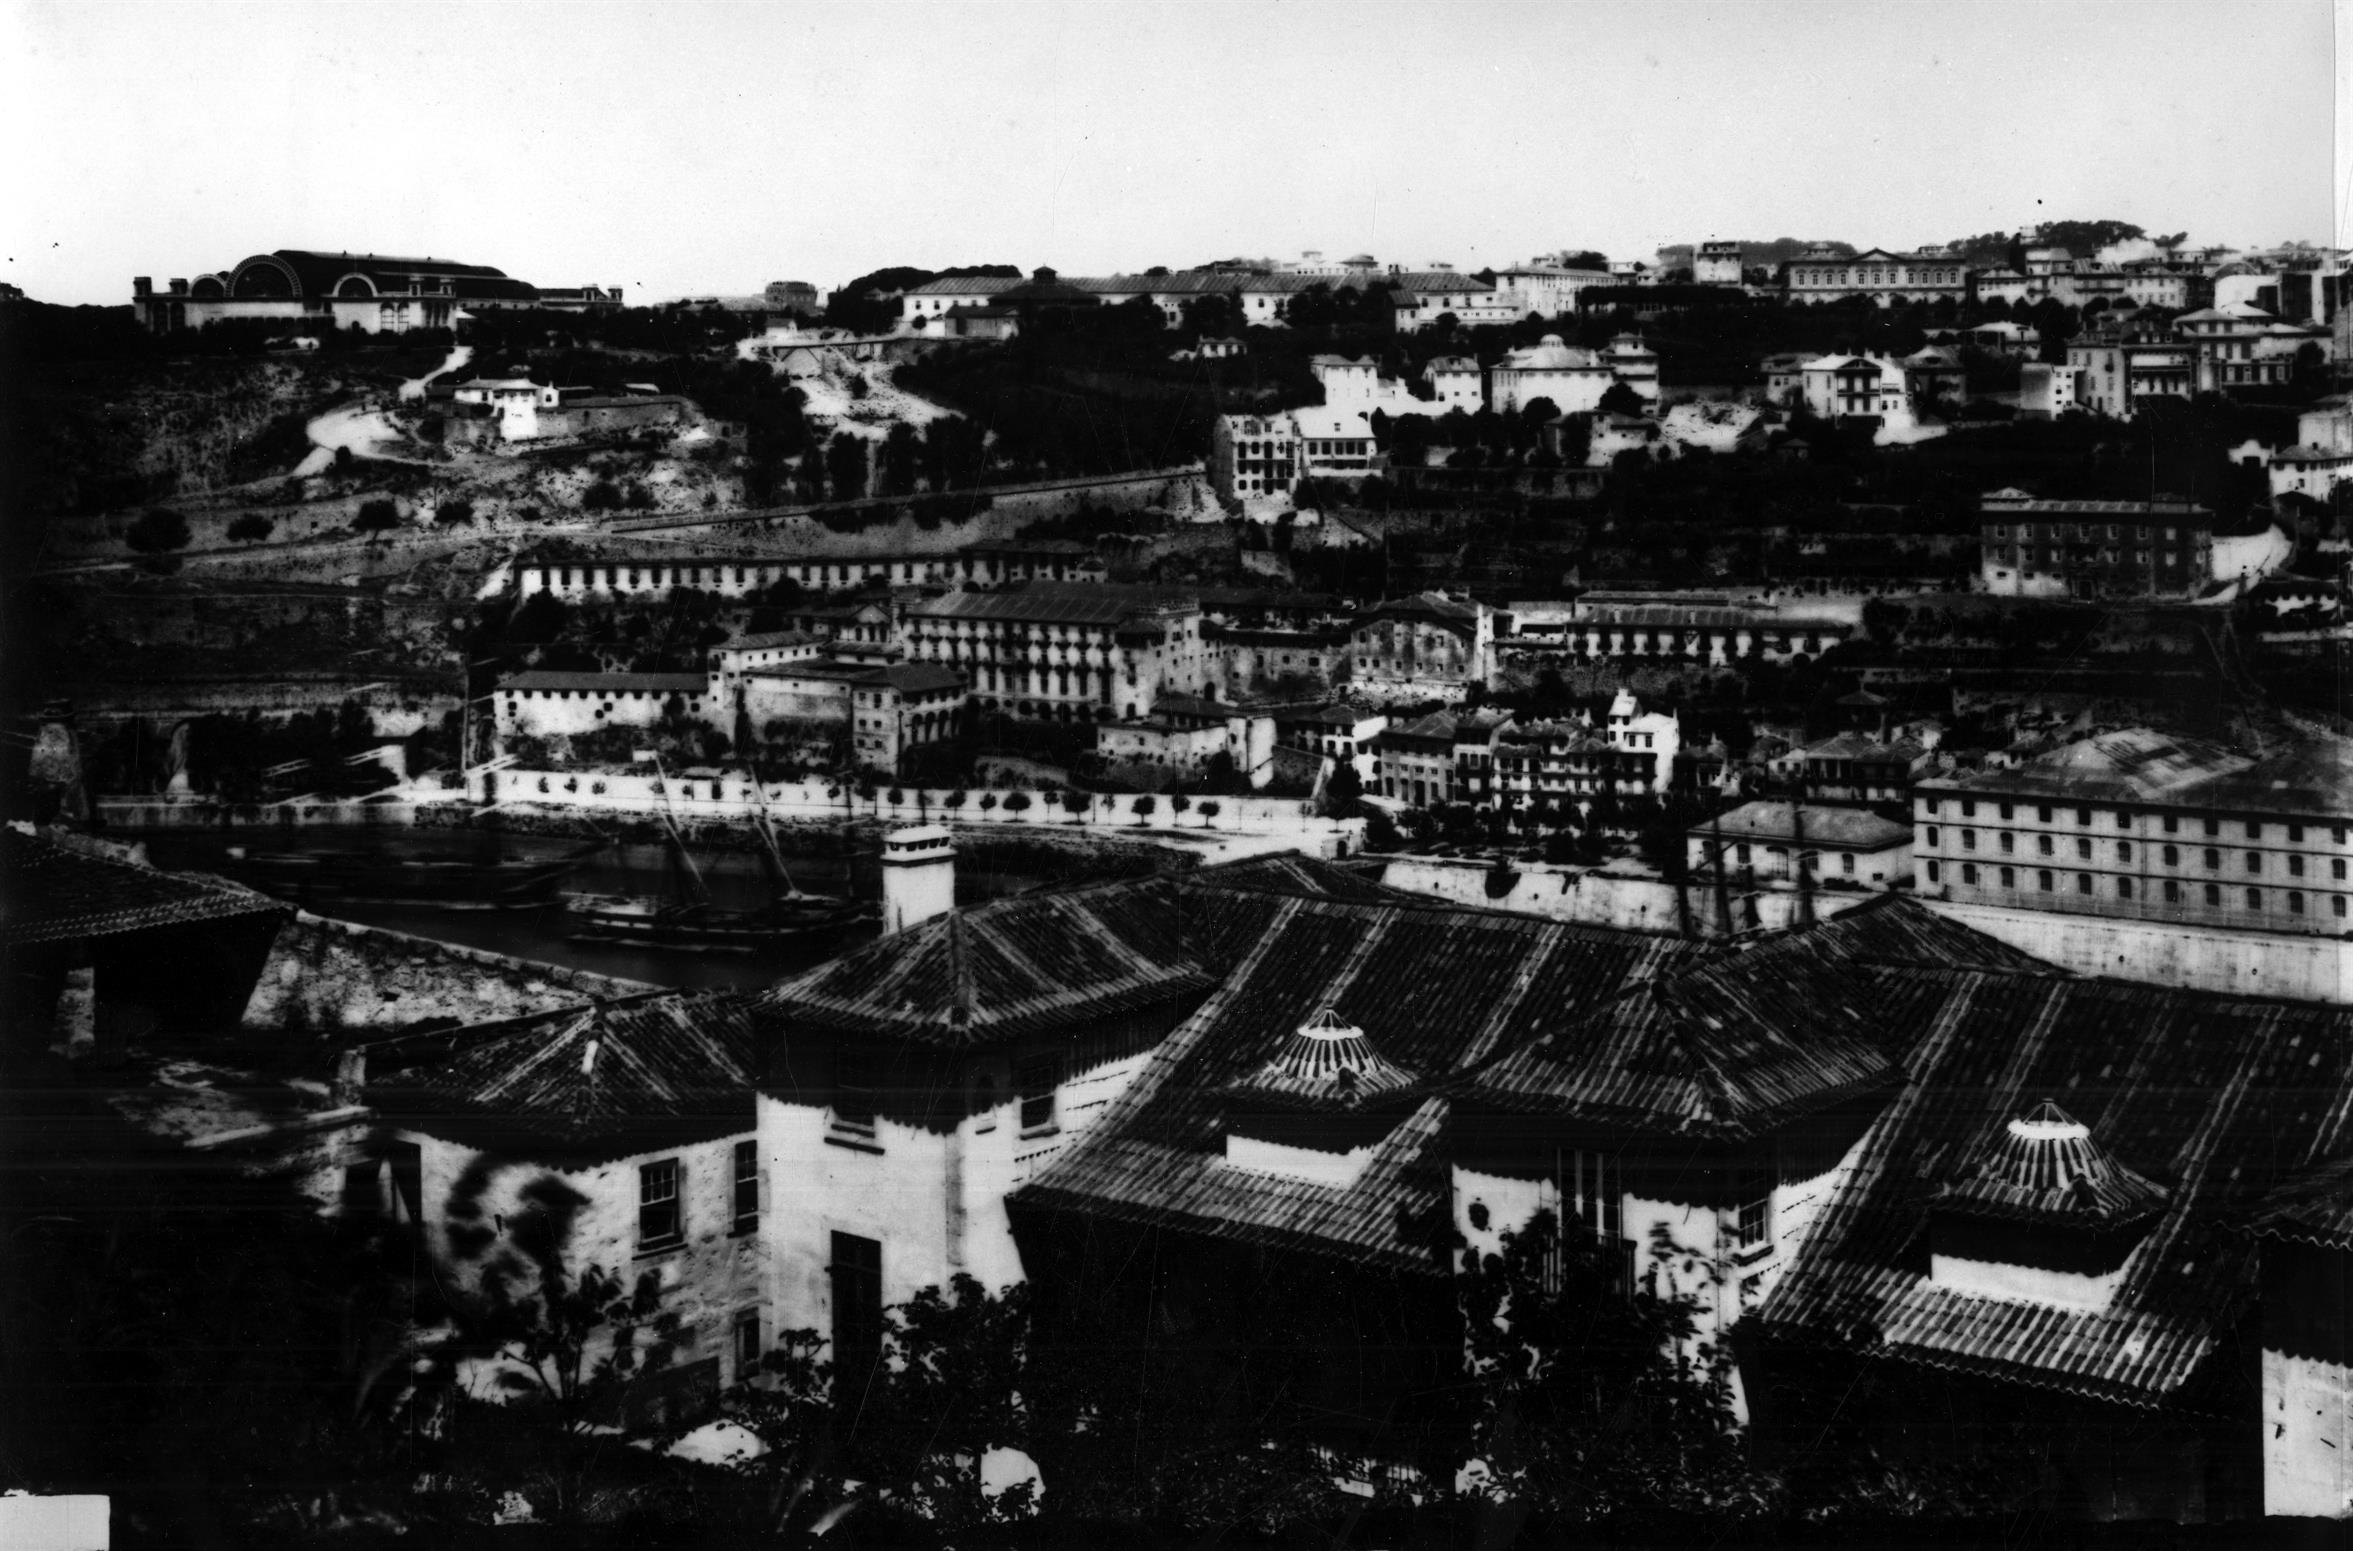 Vista de Monchique com o Palácio de Cristal, o Convento de Monchique, a Alfândega, a Rua da Restauração, etc.